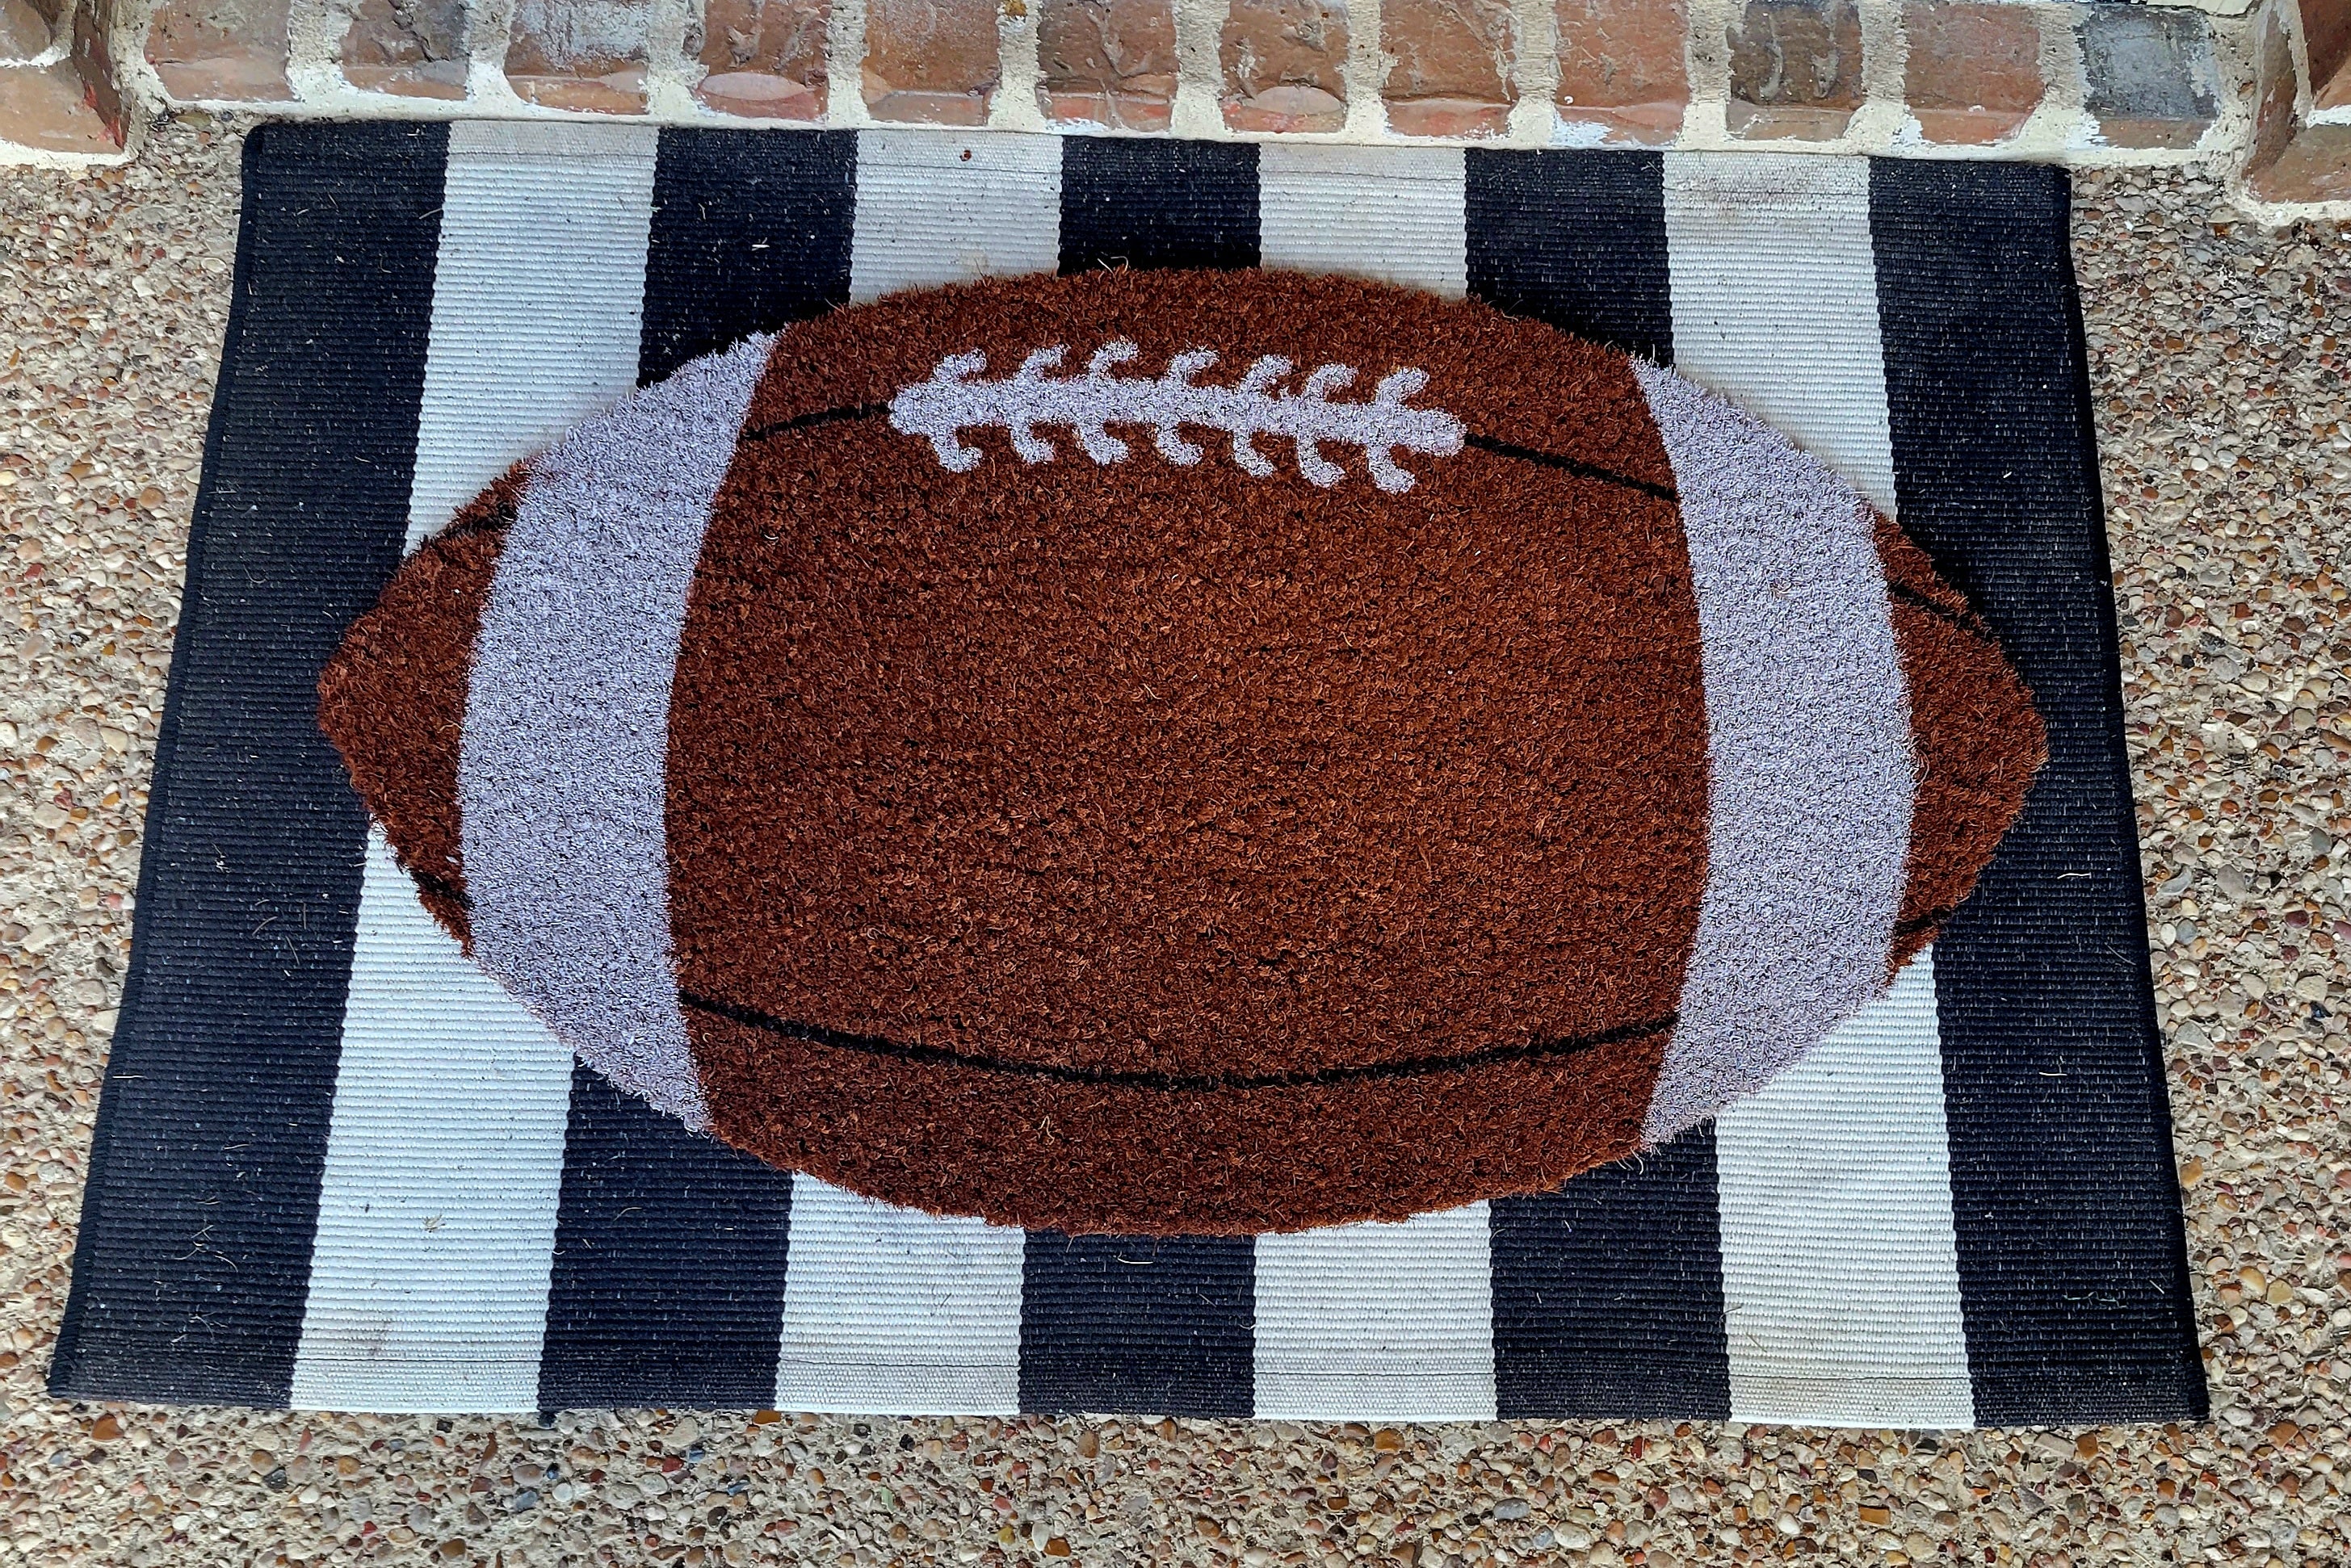 Football Welcome Mat  Fall Door Mats by Nickel Designs Doormats